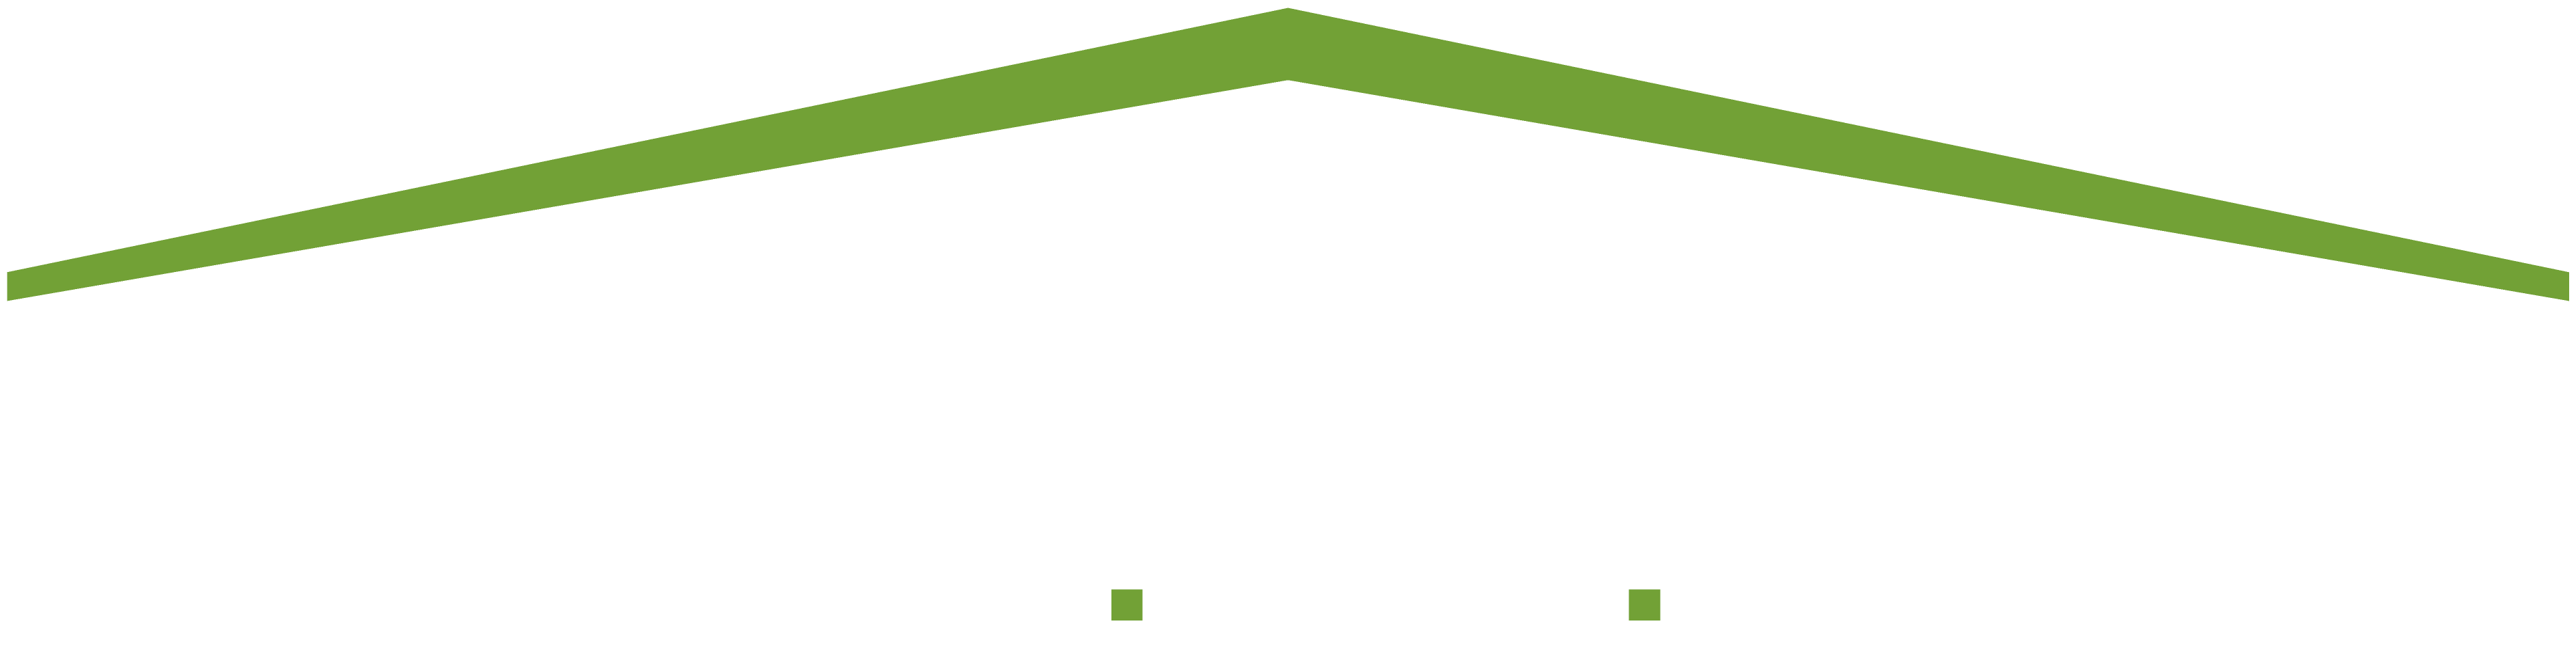 VanderBeken-DBR-reverse-RGB-High